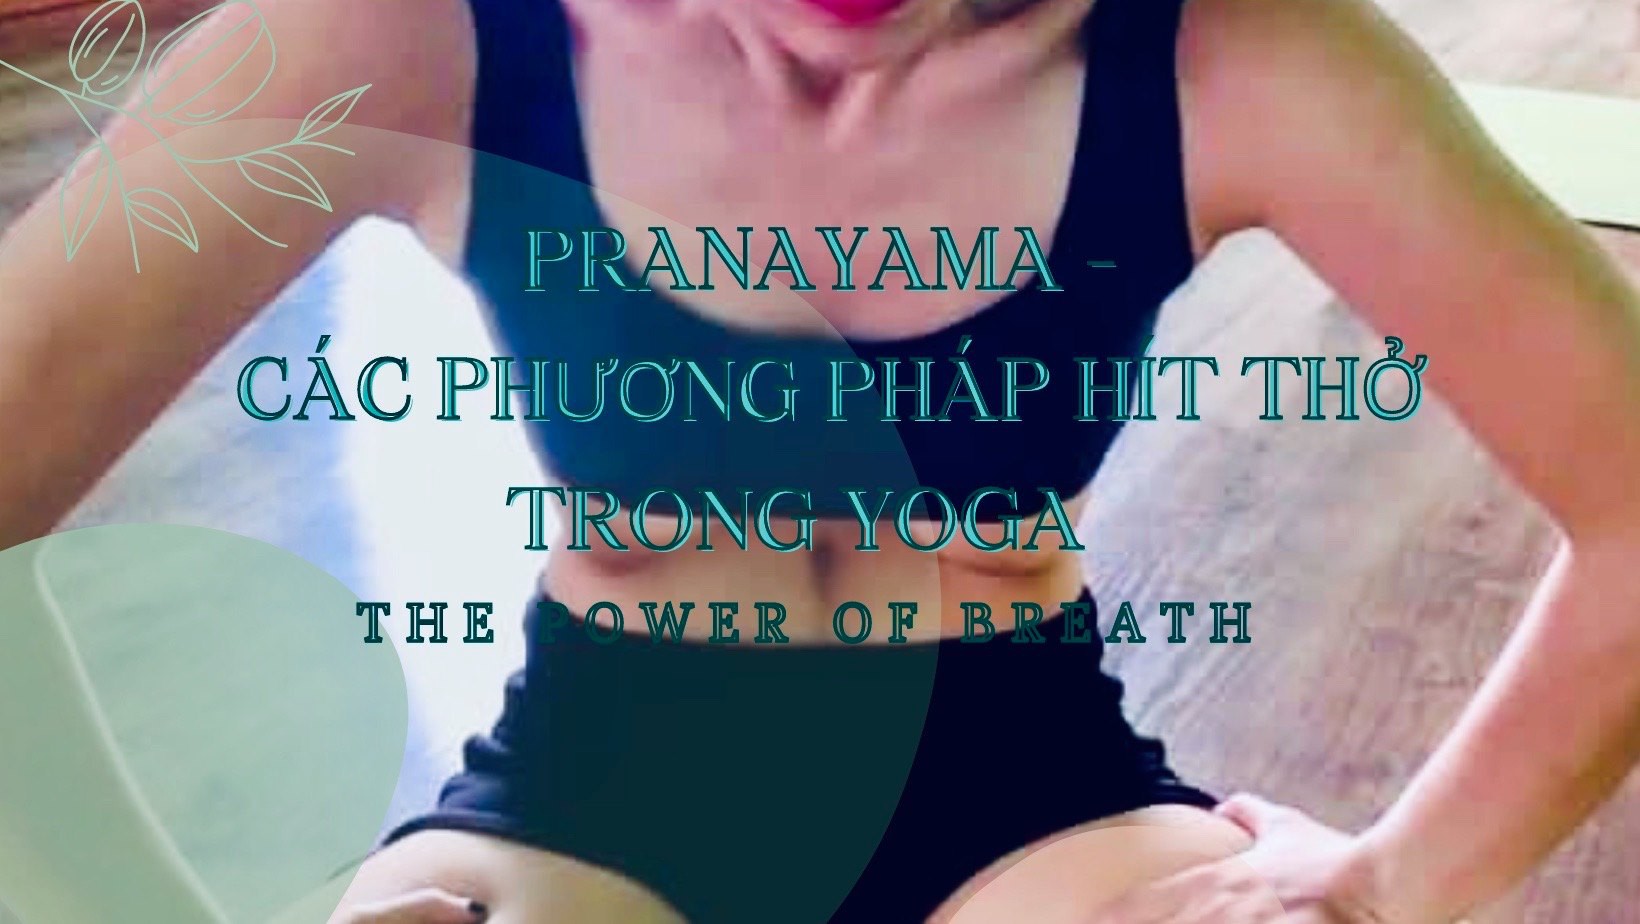 Khoá học Pranayama - Các phương pháp hít thở trong YOGA - POWER OF BREATH